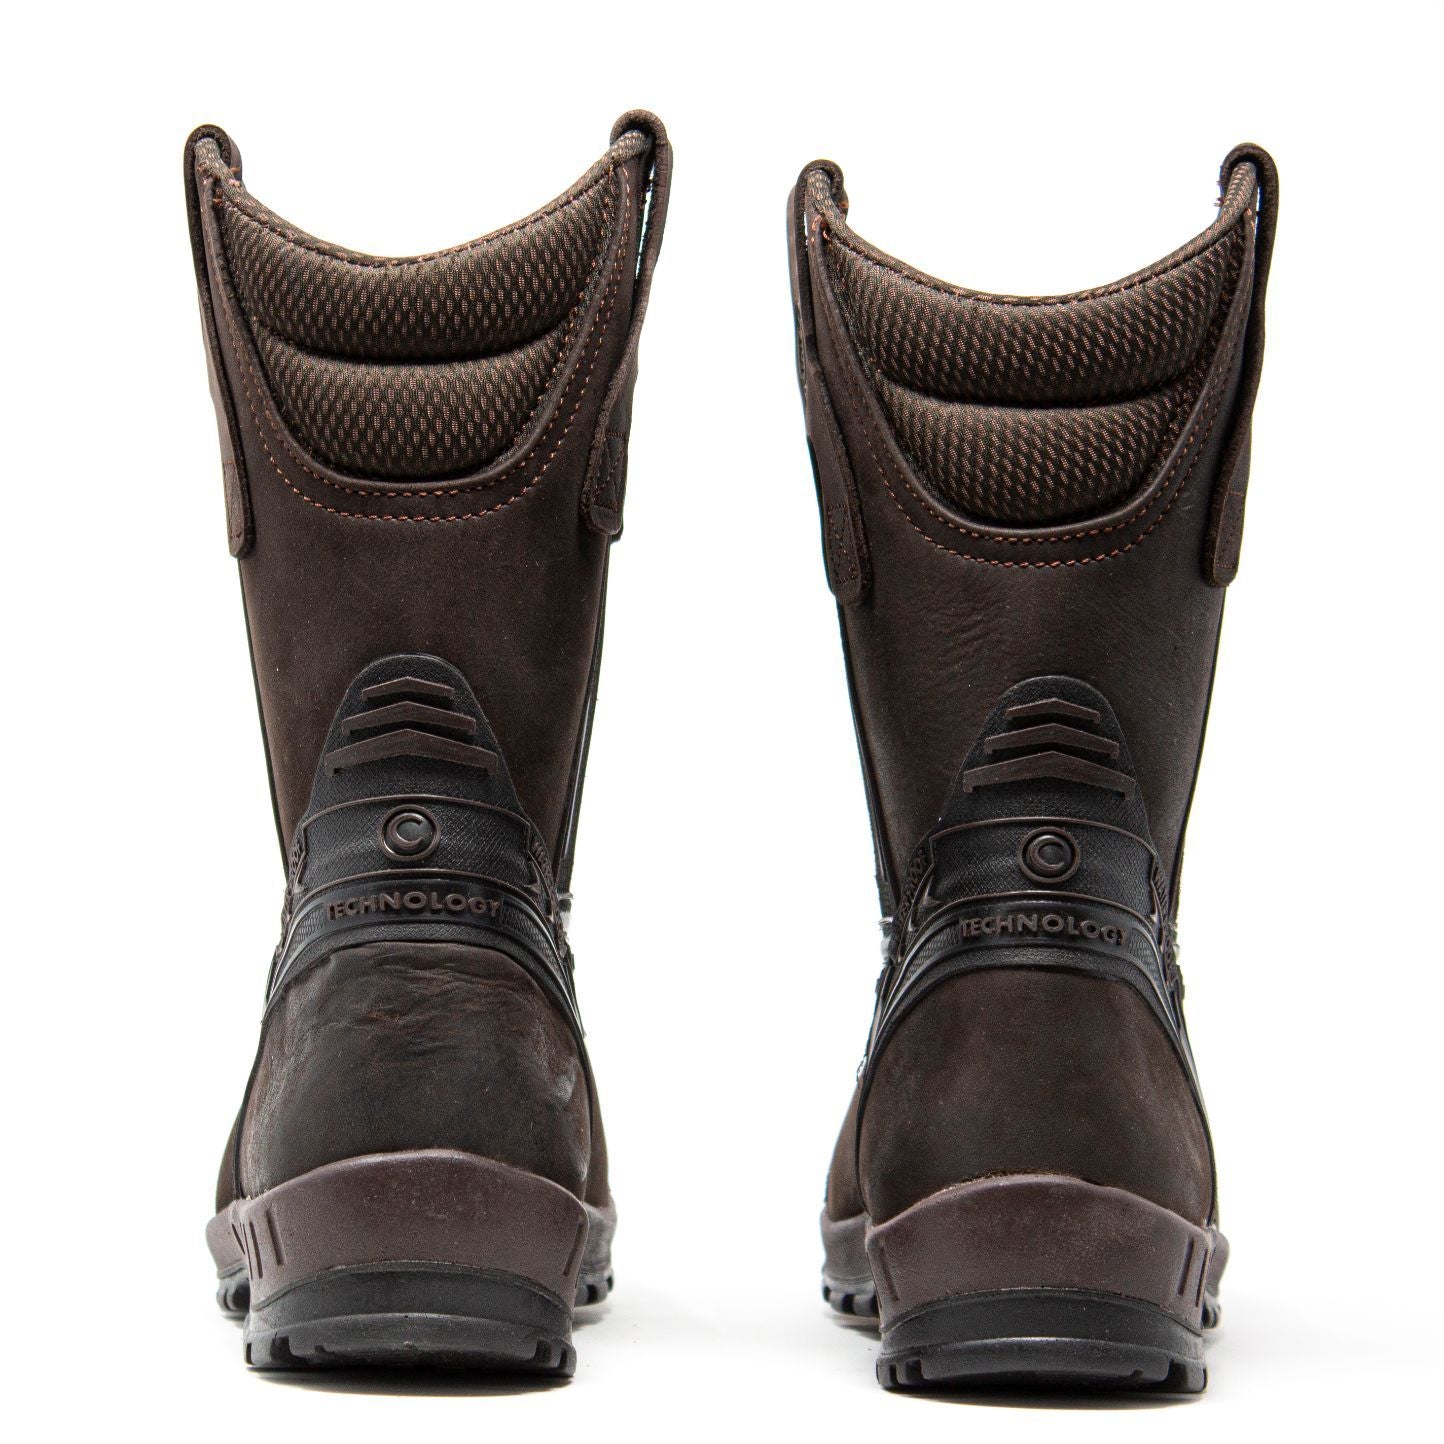 Men's Work Boots - Waterproof & Composite Toe - Brown Work Boots - Cebu - Pull On Work Boots - Brown Wellington Work Boots